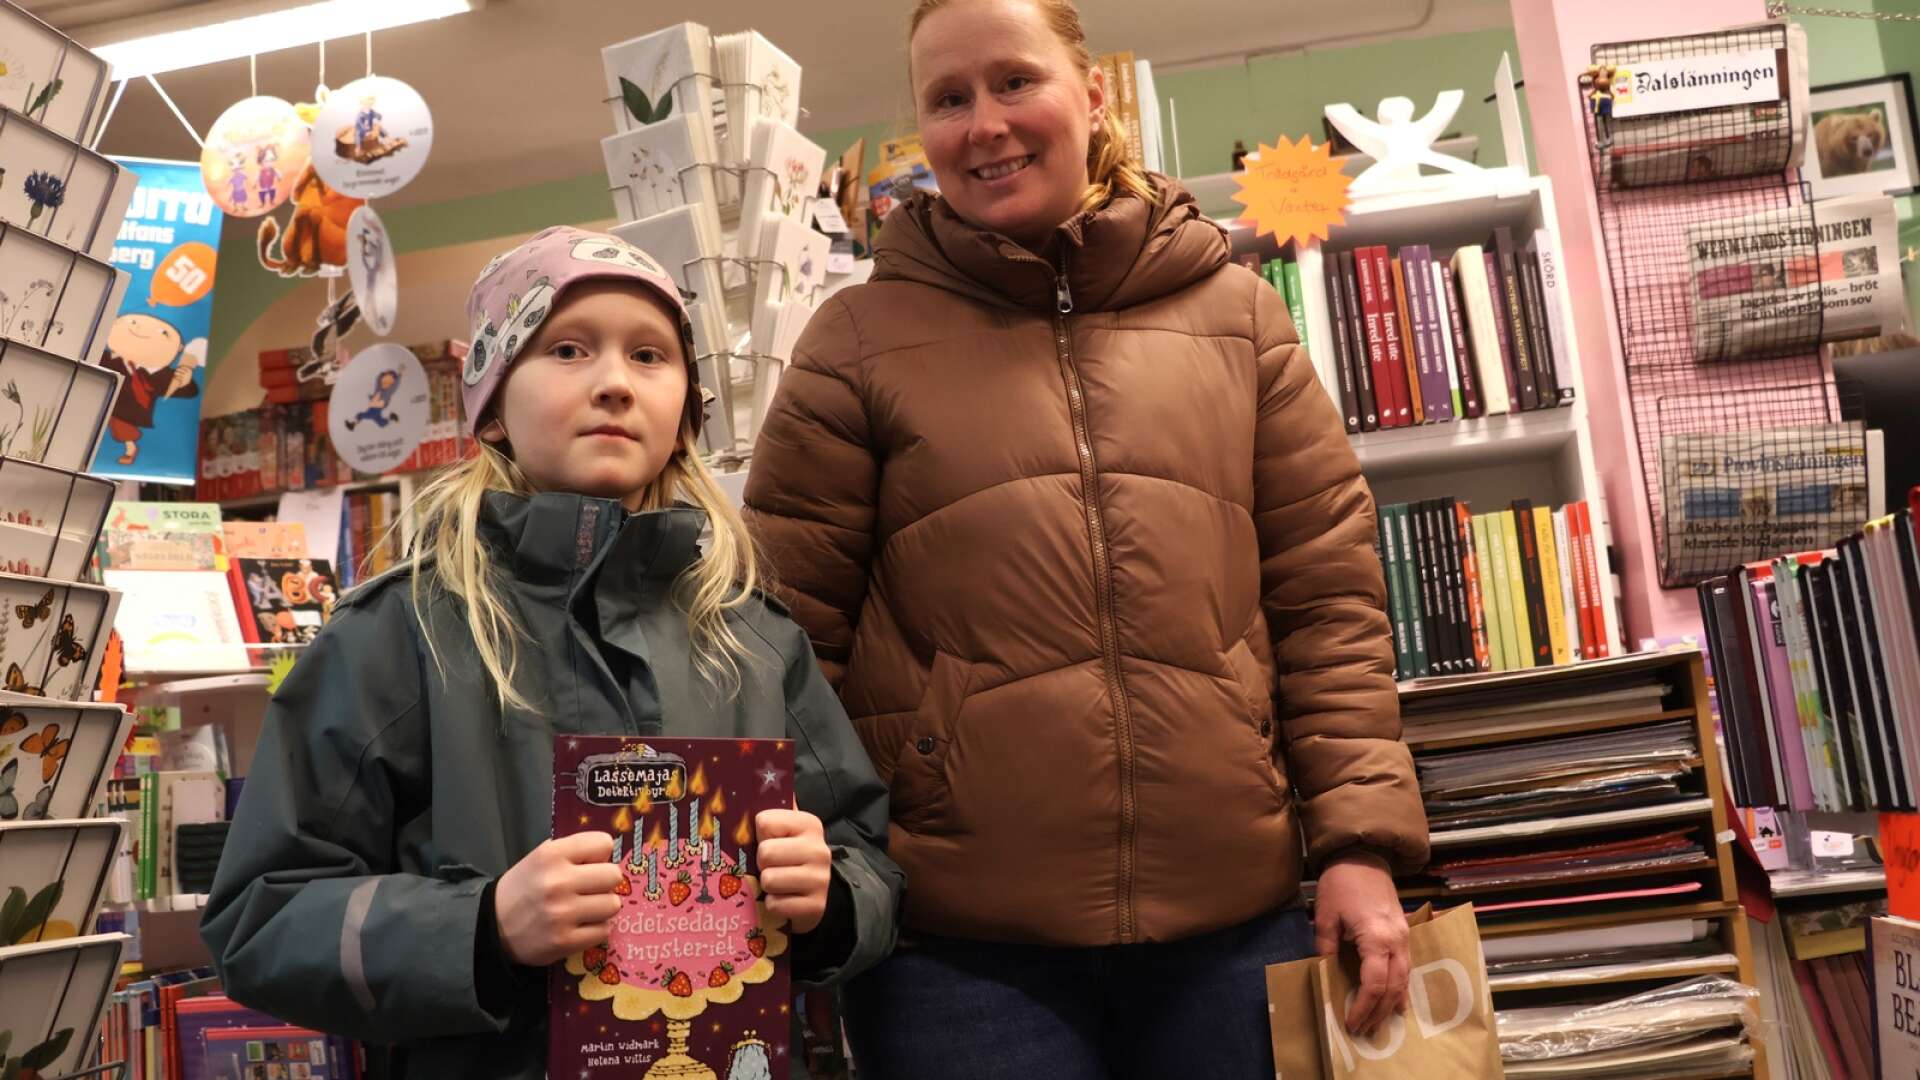 Linnea Fredriksson och hennes mamma Elisabeth Fredriksson under årets bokrea. Linnea hade hittat boken ”Födelsedagsmysteriet” av Martin Widmark som hon slog till på.